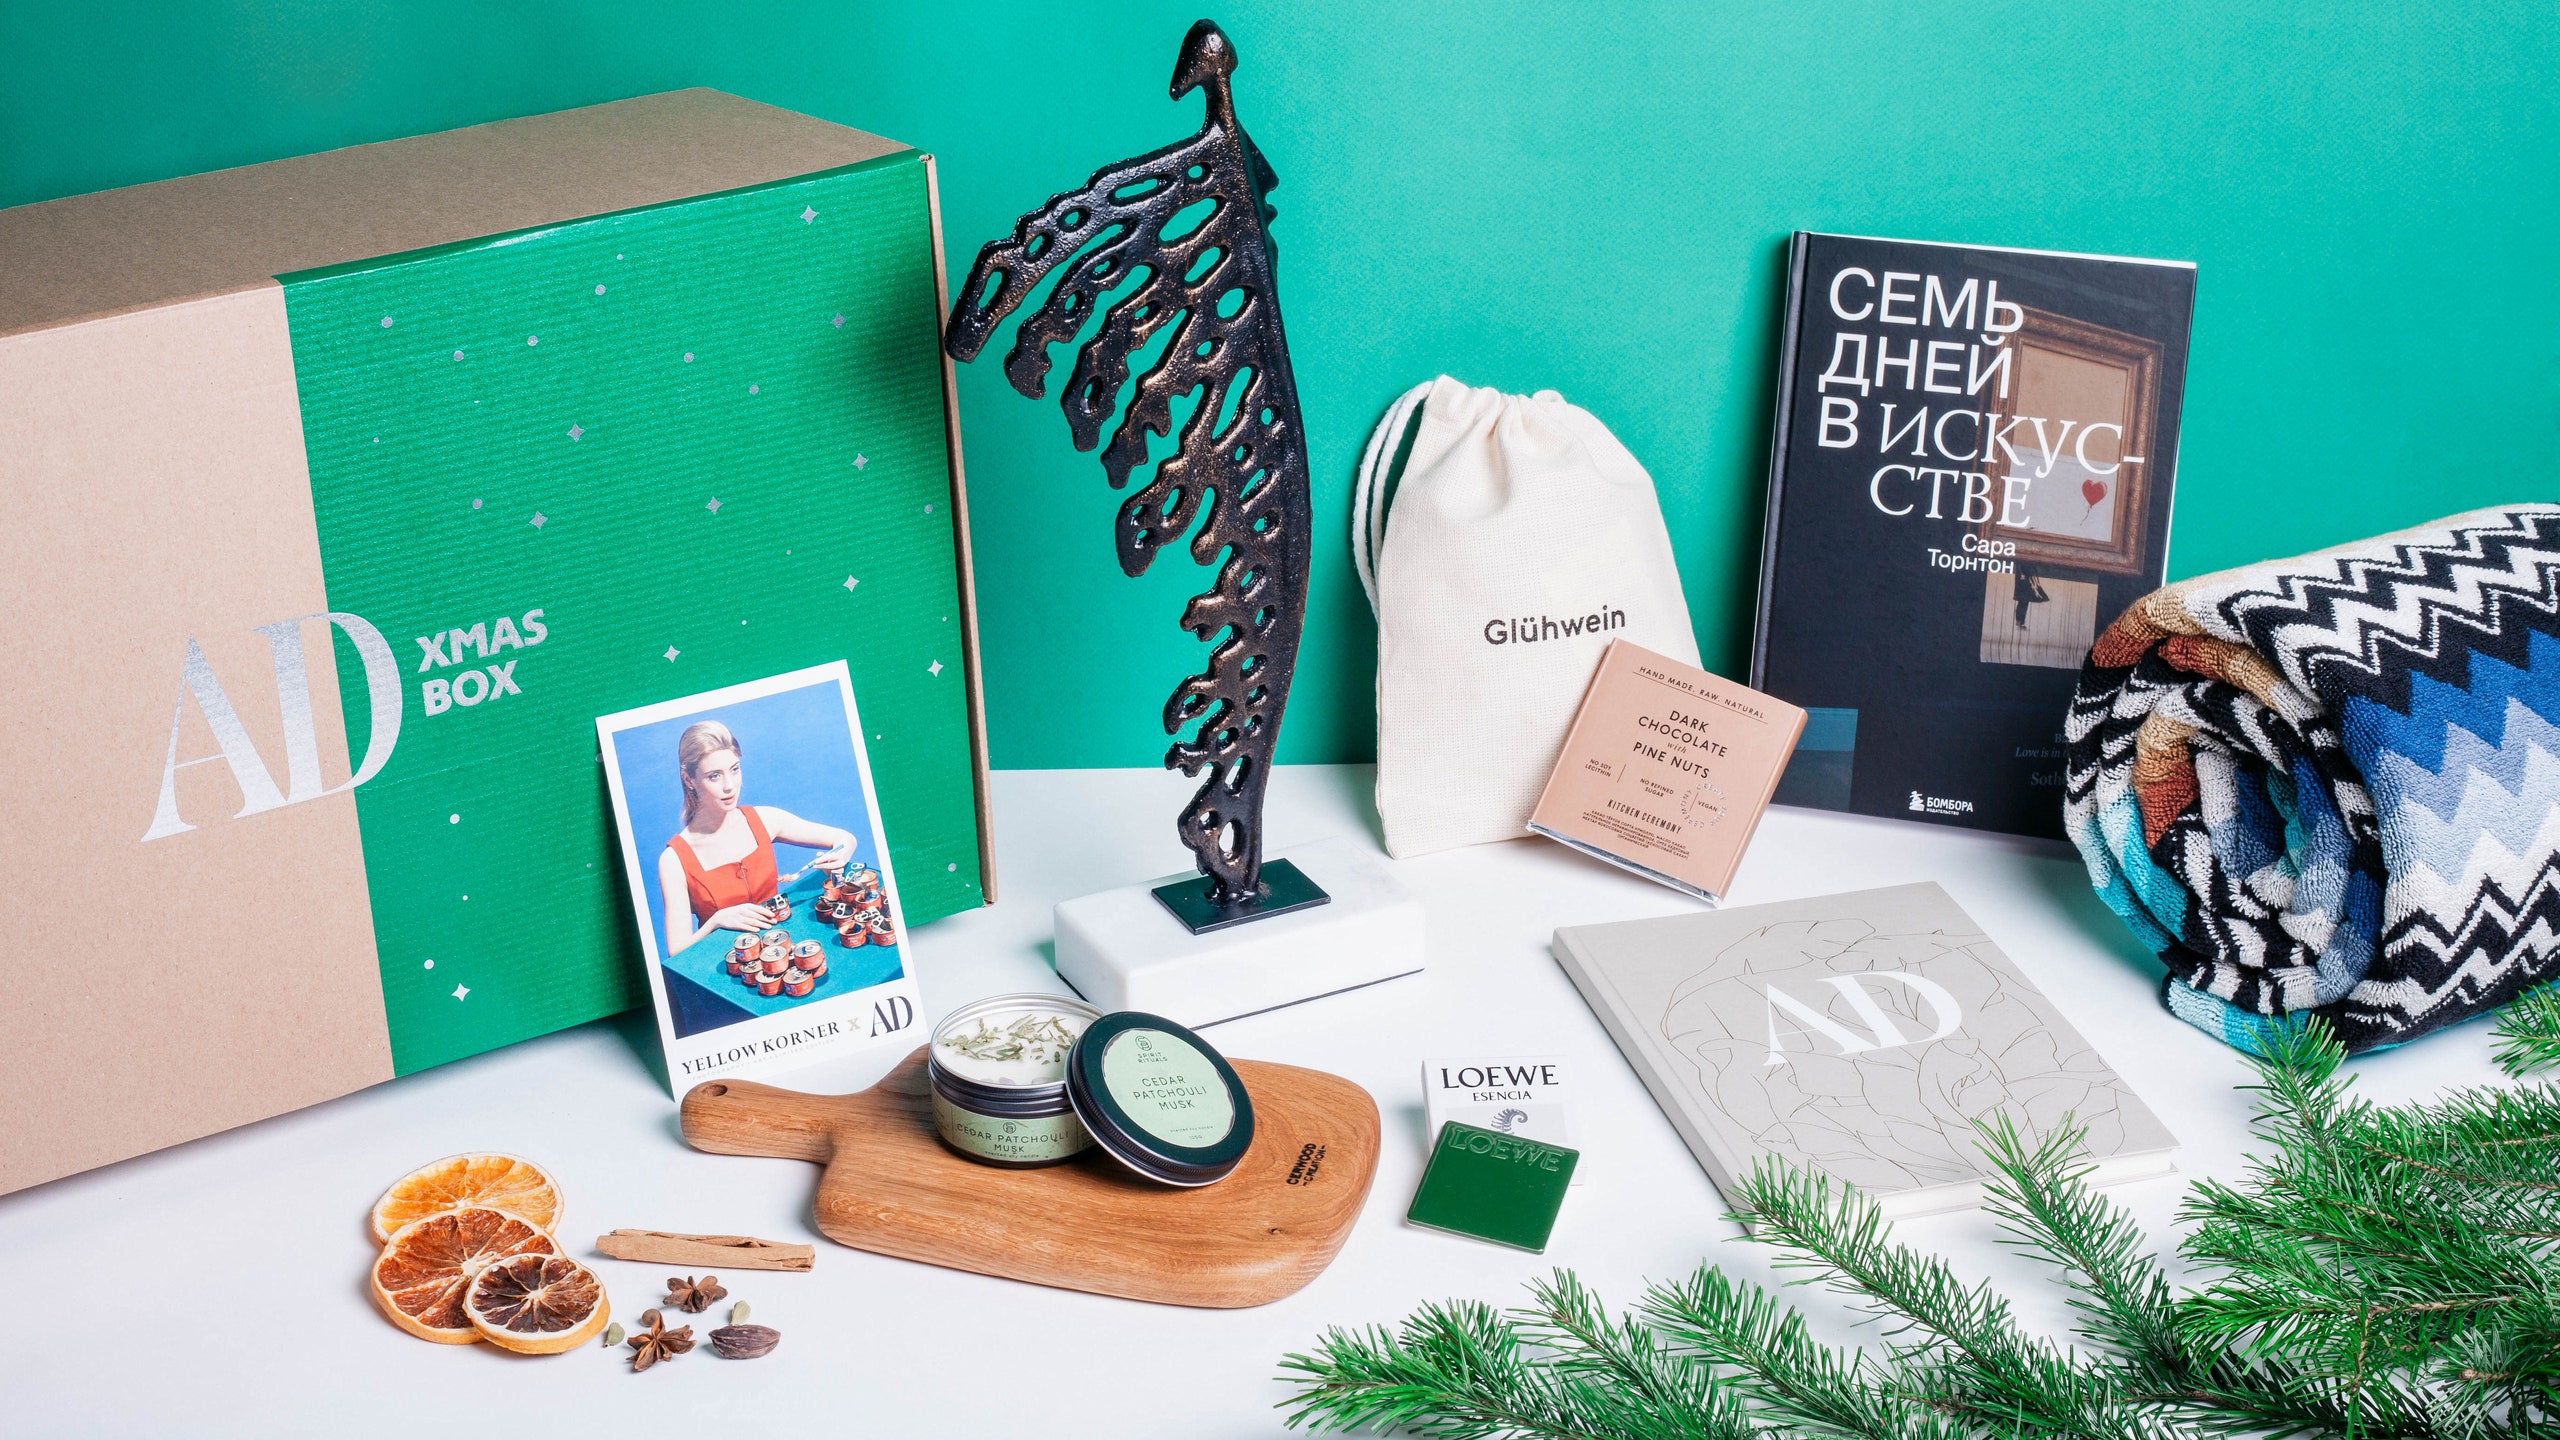 AD Xmas Box уже в продаже подарочный набор для создания праздничной атмосферы в доме